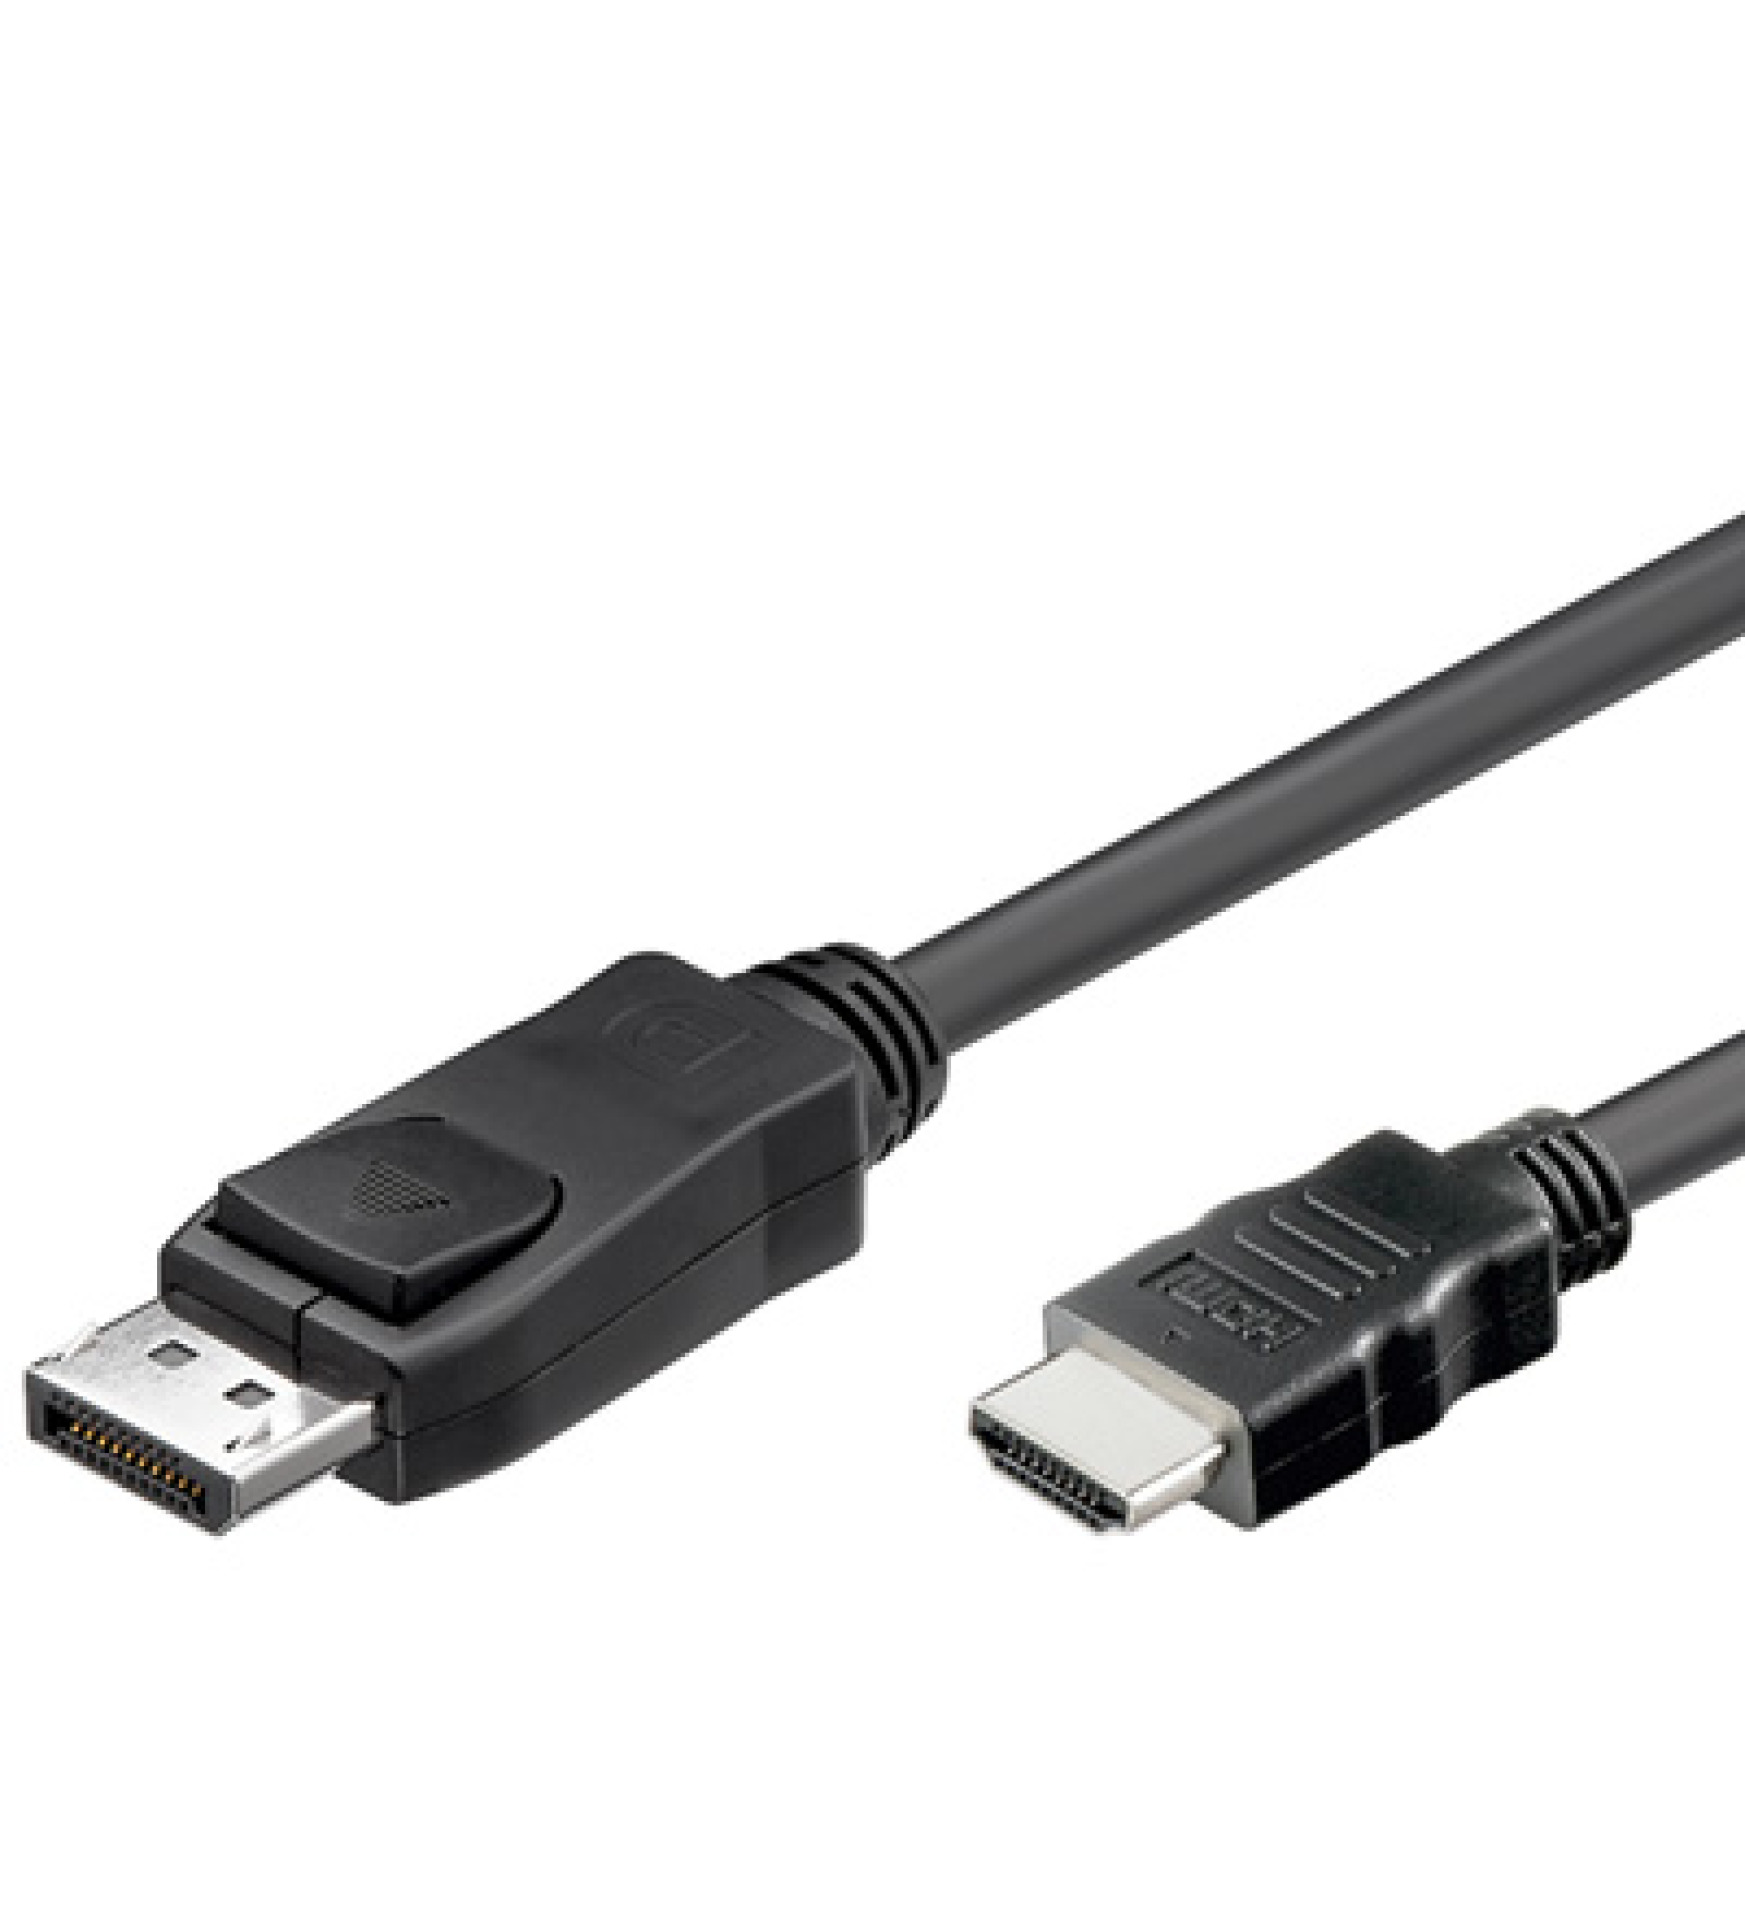 Konverterkabel DisplayPort 1.1 auf HDMI, schwarz, 5 m